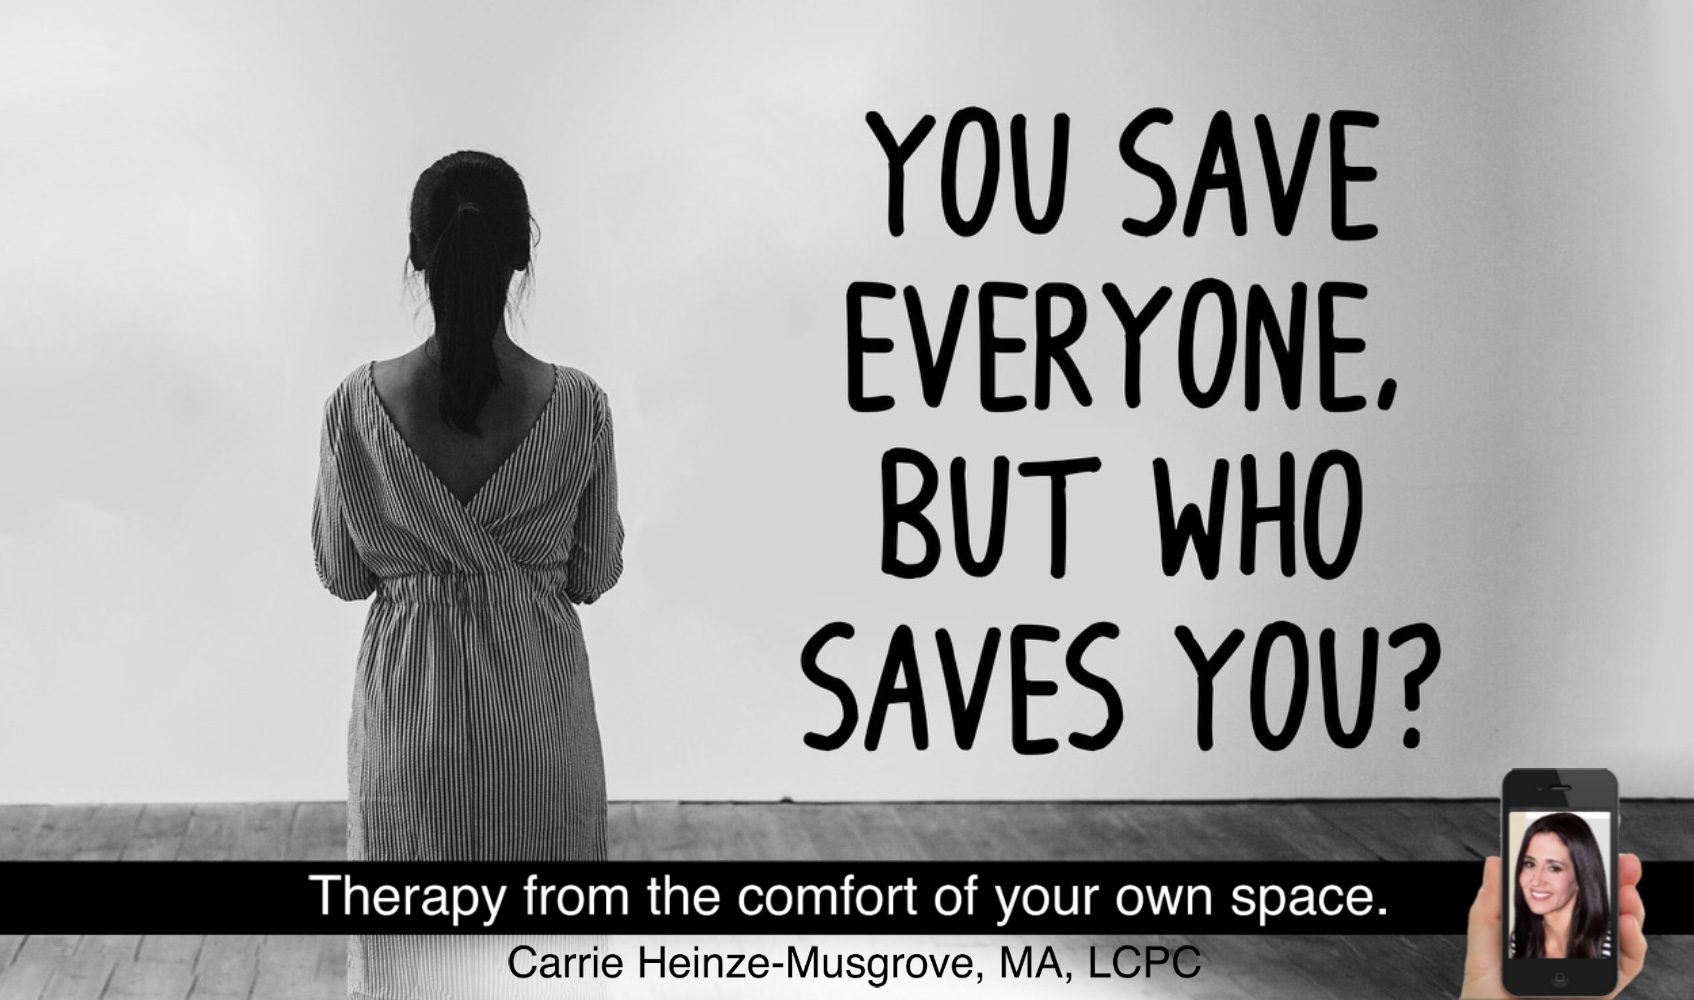 So, who’s saving YOU?